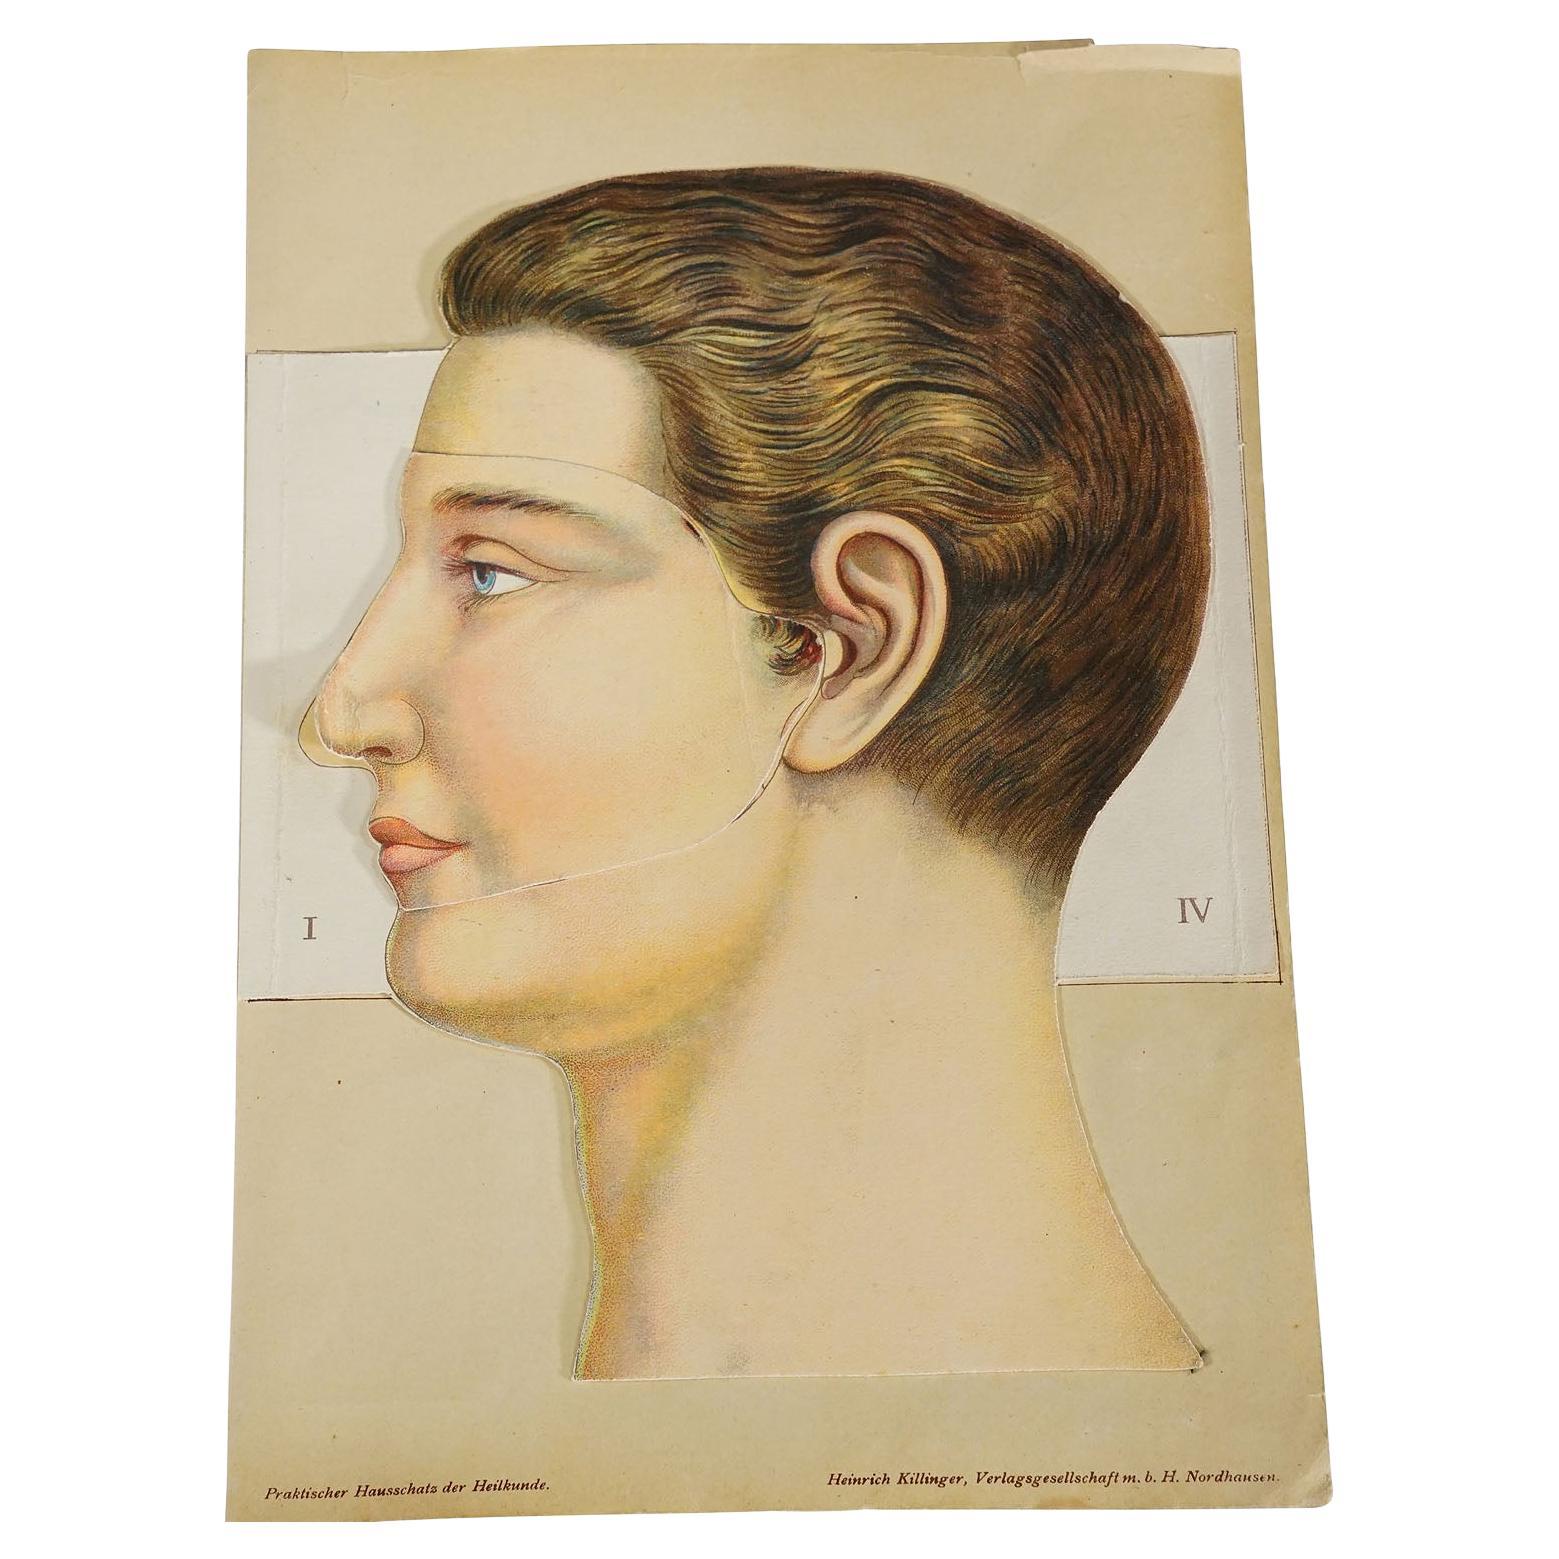 Broche anatomique pliable des années 1900 représentant la tête humaine